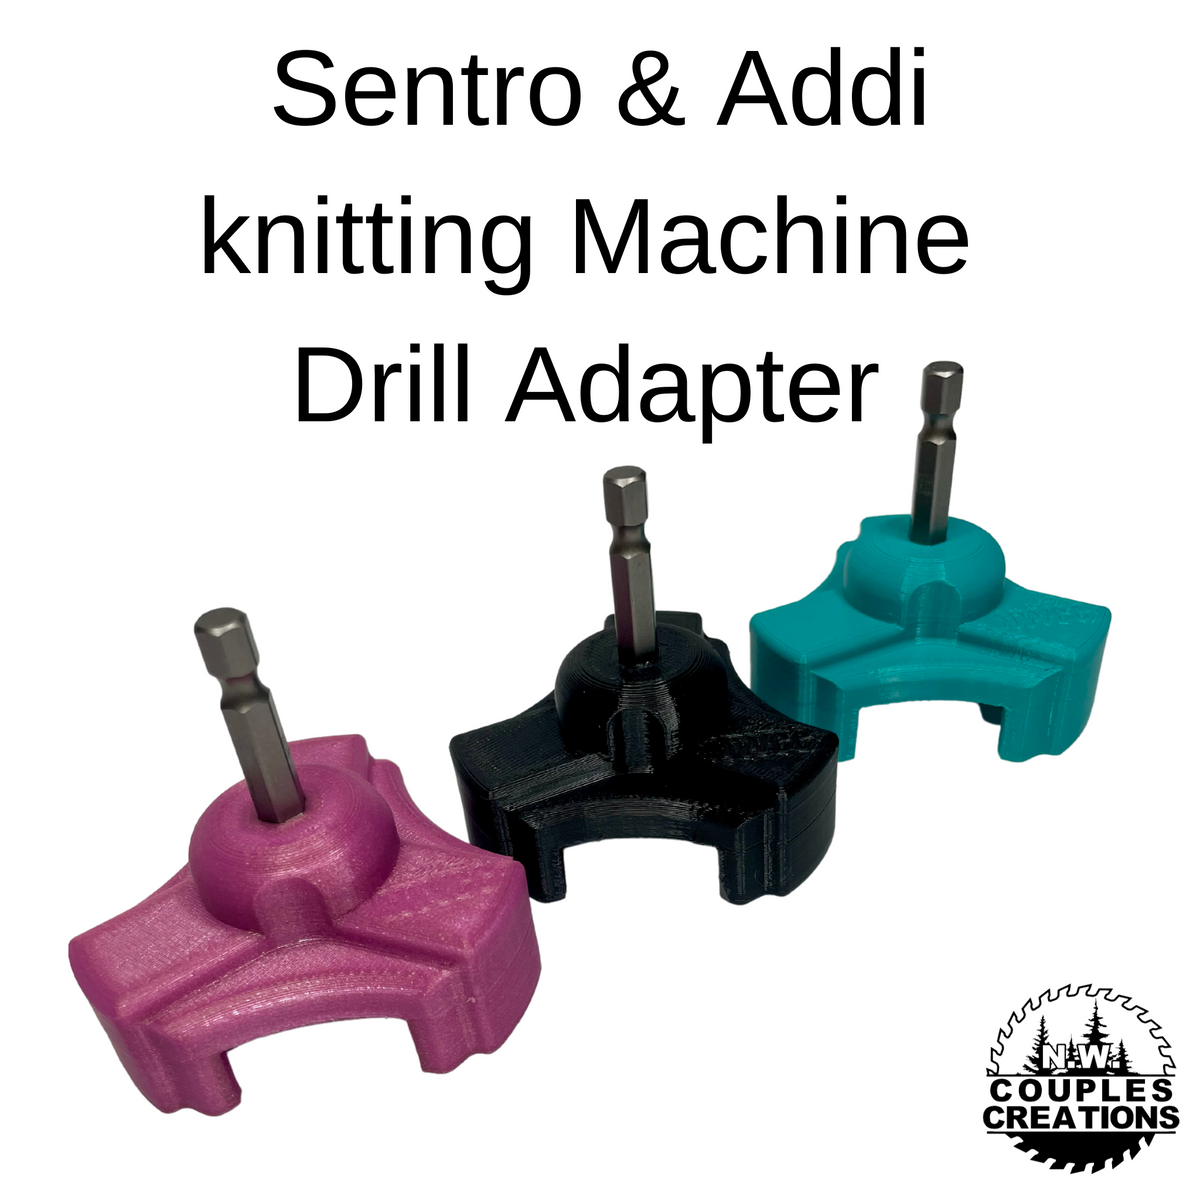 Addi VS Sentro Knitting Machine Comparison🧶 